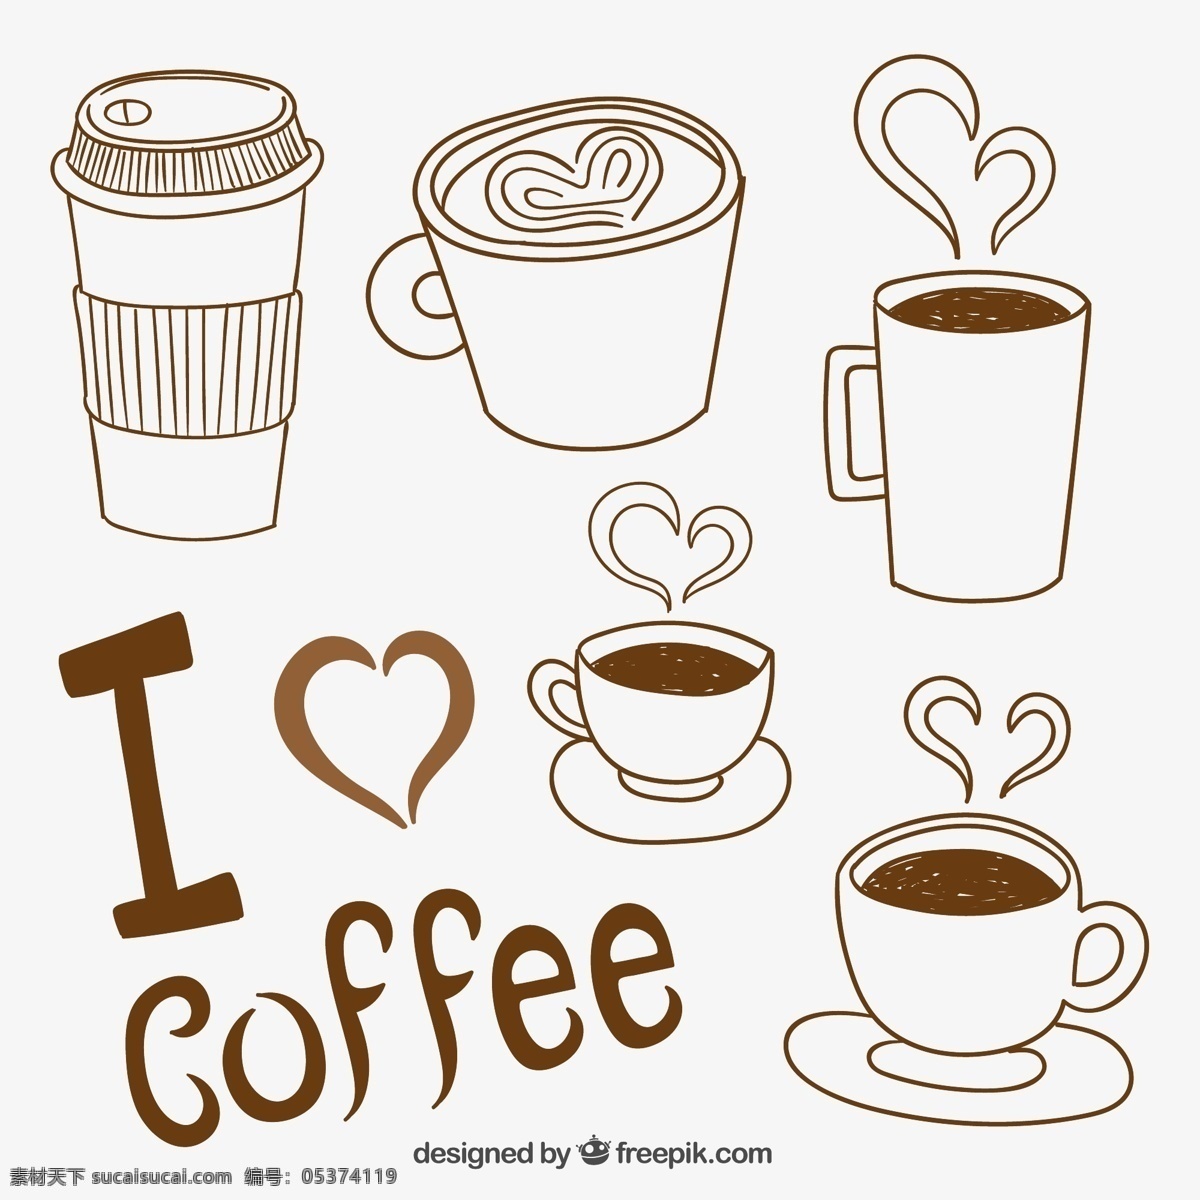 咖啡杯 咖啡 绘制品种 饮料 绘画 马克杯 插图 抽纱 杯子 手绘 品种多 图标 高清 源文件